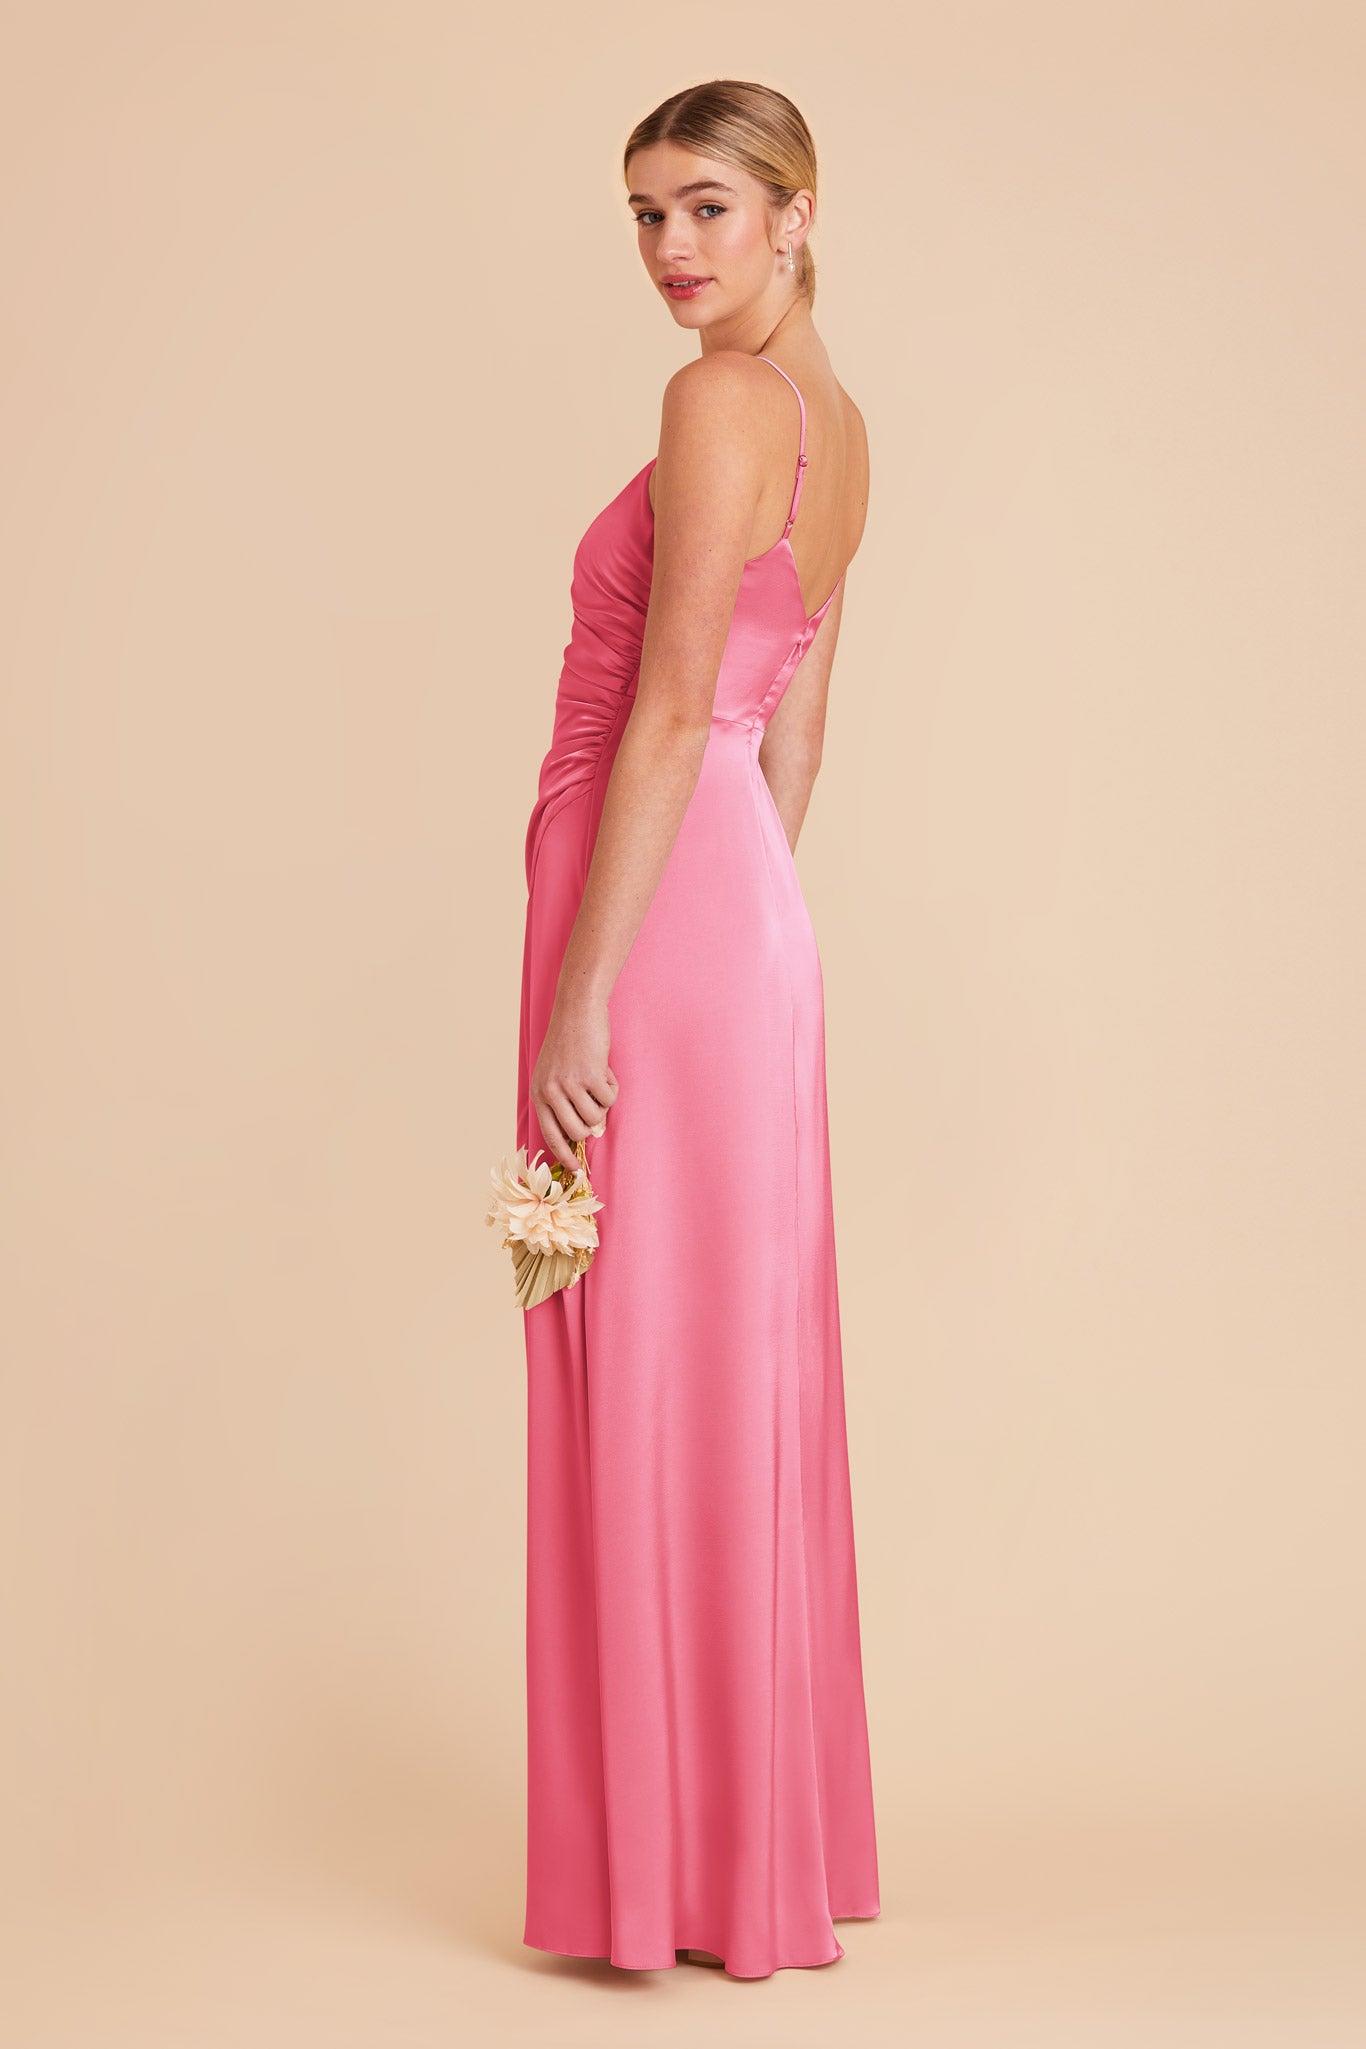 Bon Bon Pink Catherine Matte Satin Dress by Birdy Grey